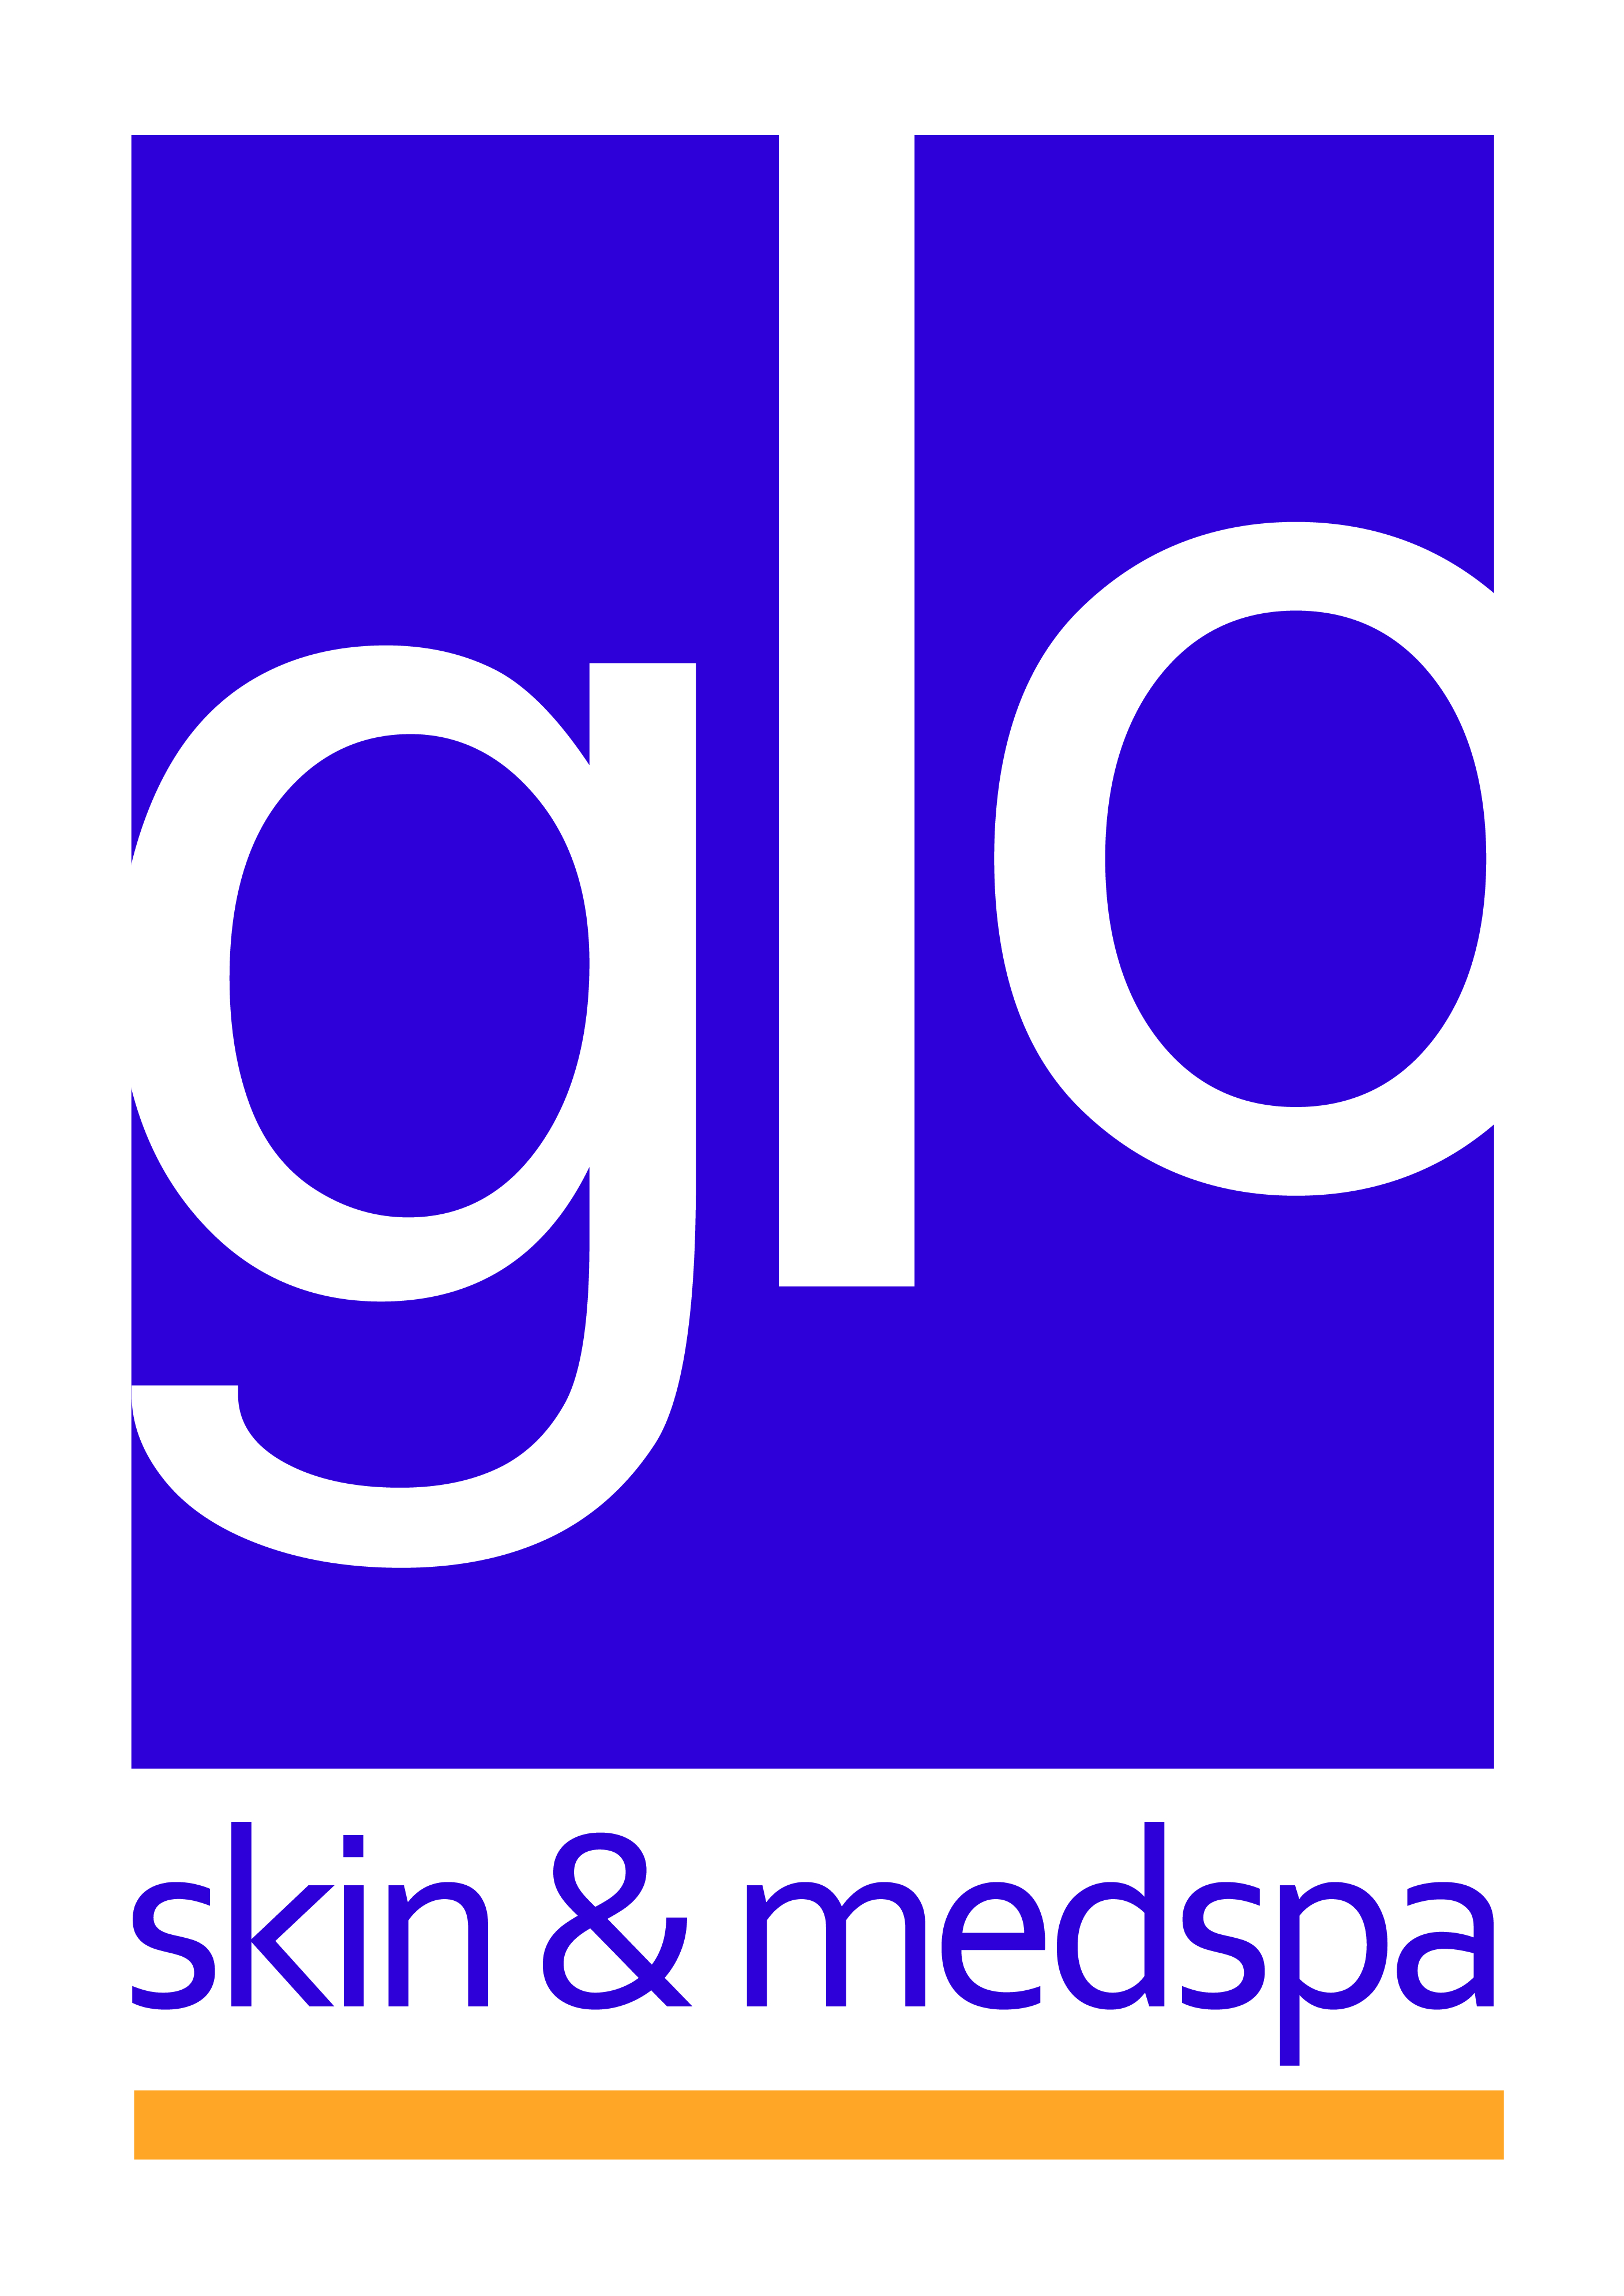 Glo Skin & Medspa logo